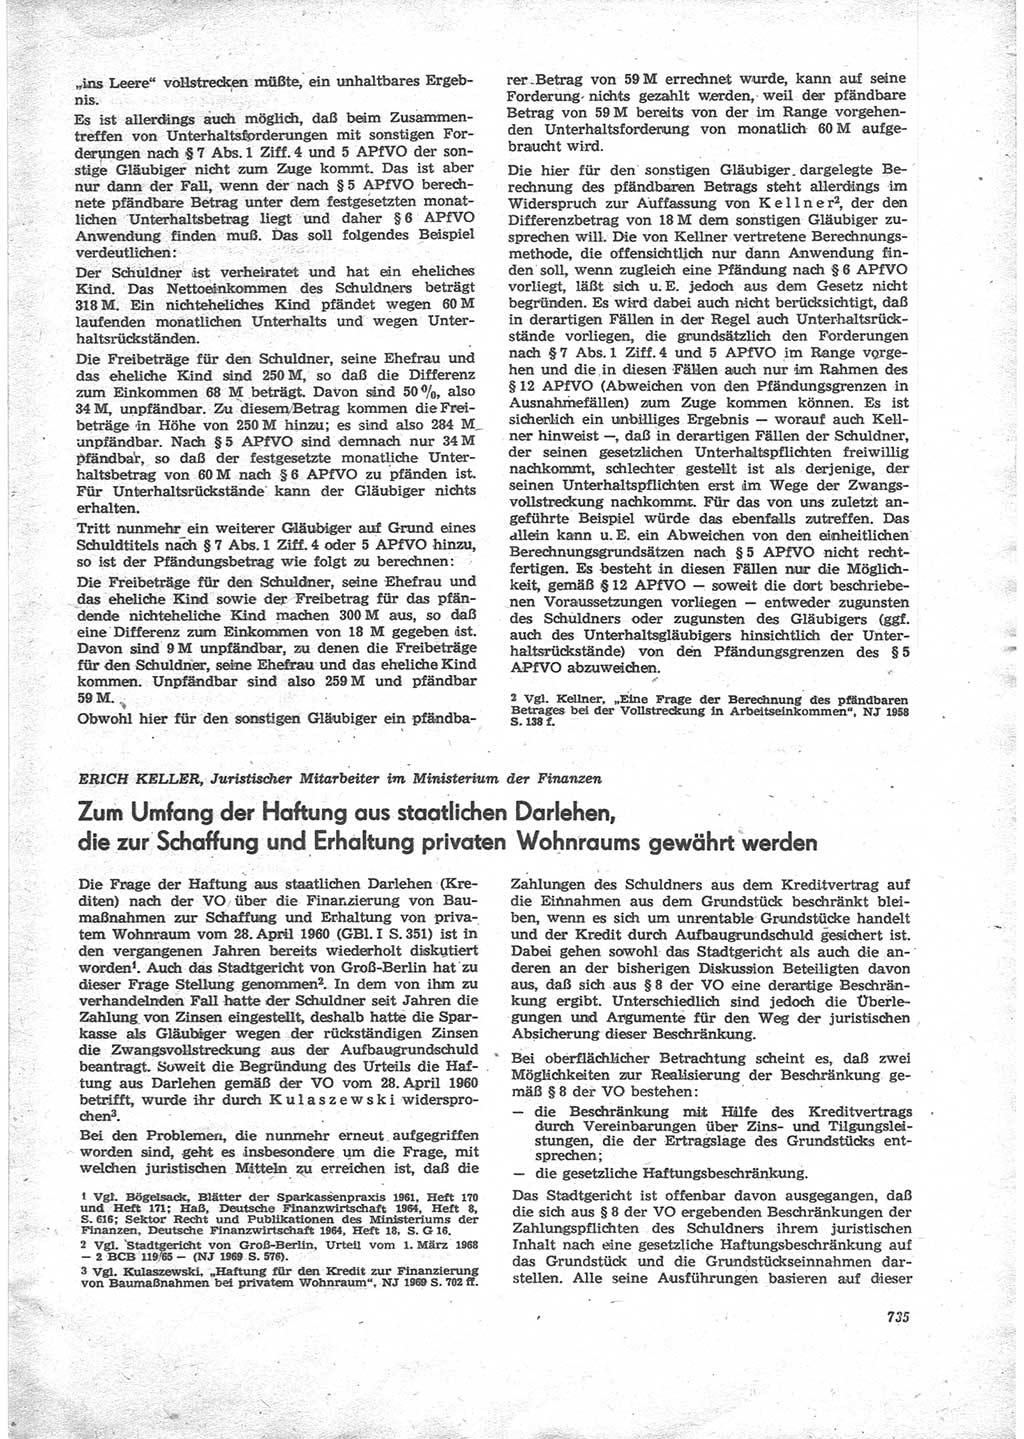 Neue Justiz (NJ), Zeitschrift für Recht und Rechtswissenschaft [Deutsche Demokratische Republik (DDR)], 24. Jahrgang 1970, Seite 735 (NJ DDR 1970, S. 735)